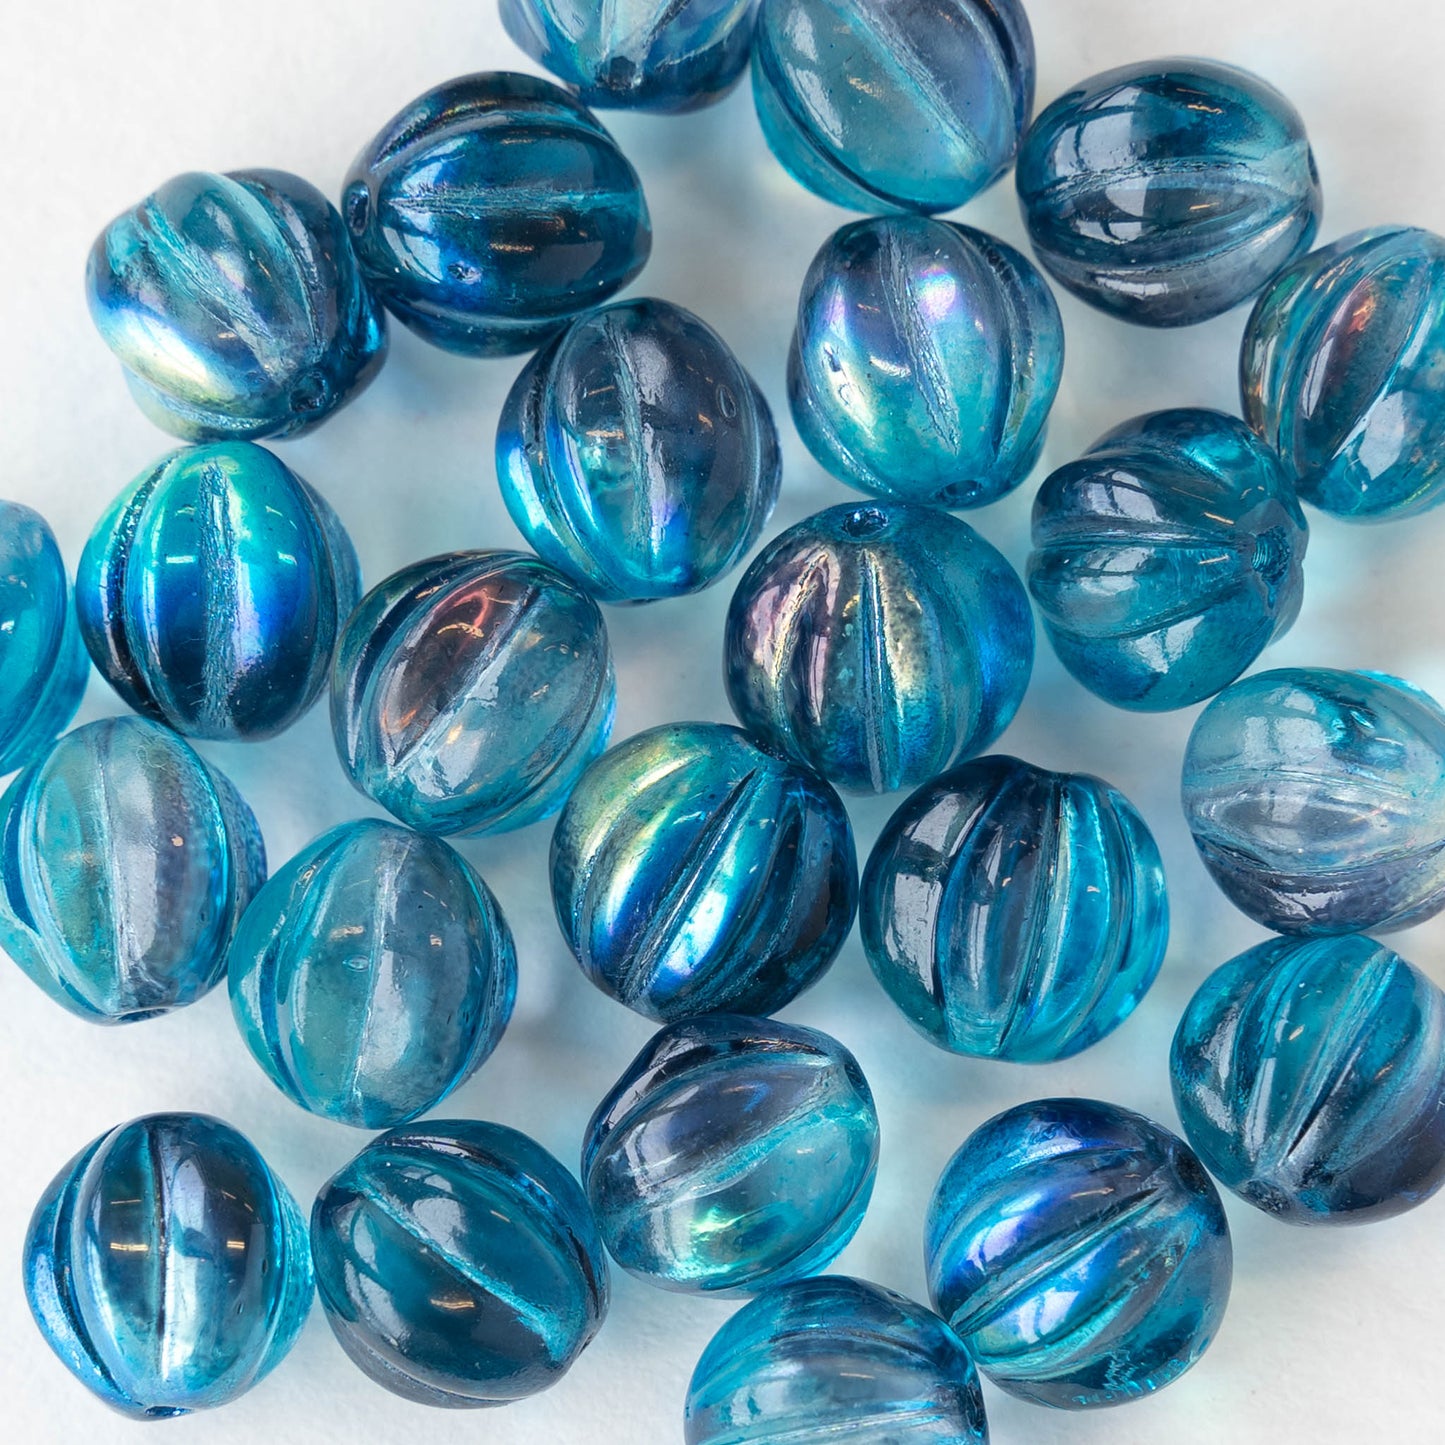 10mm Melon Bead - Teal Blue Mix - 20 Beads